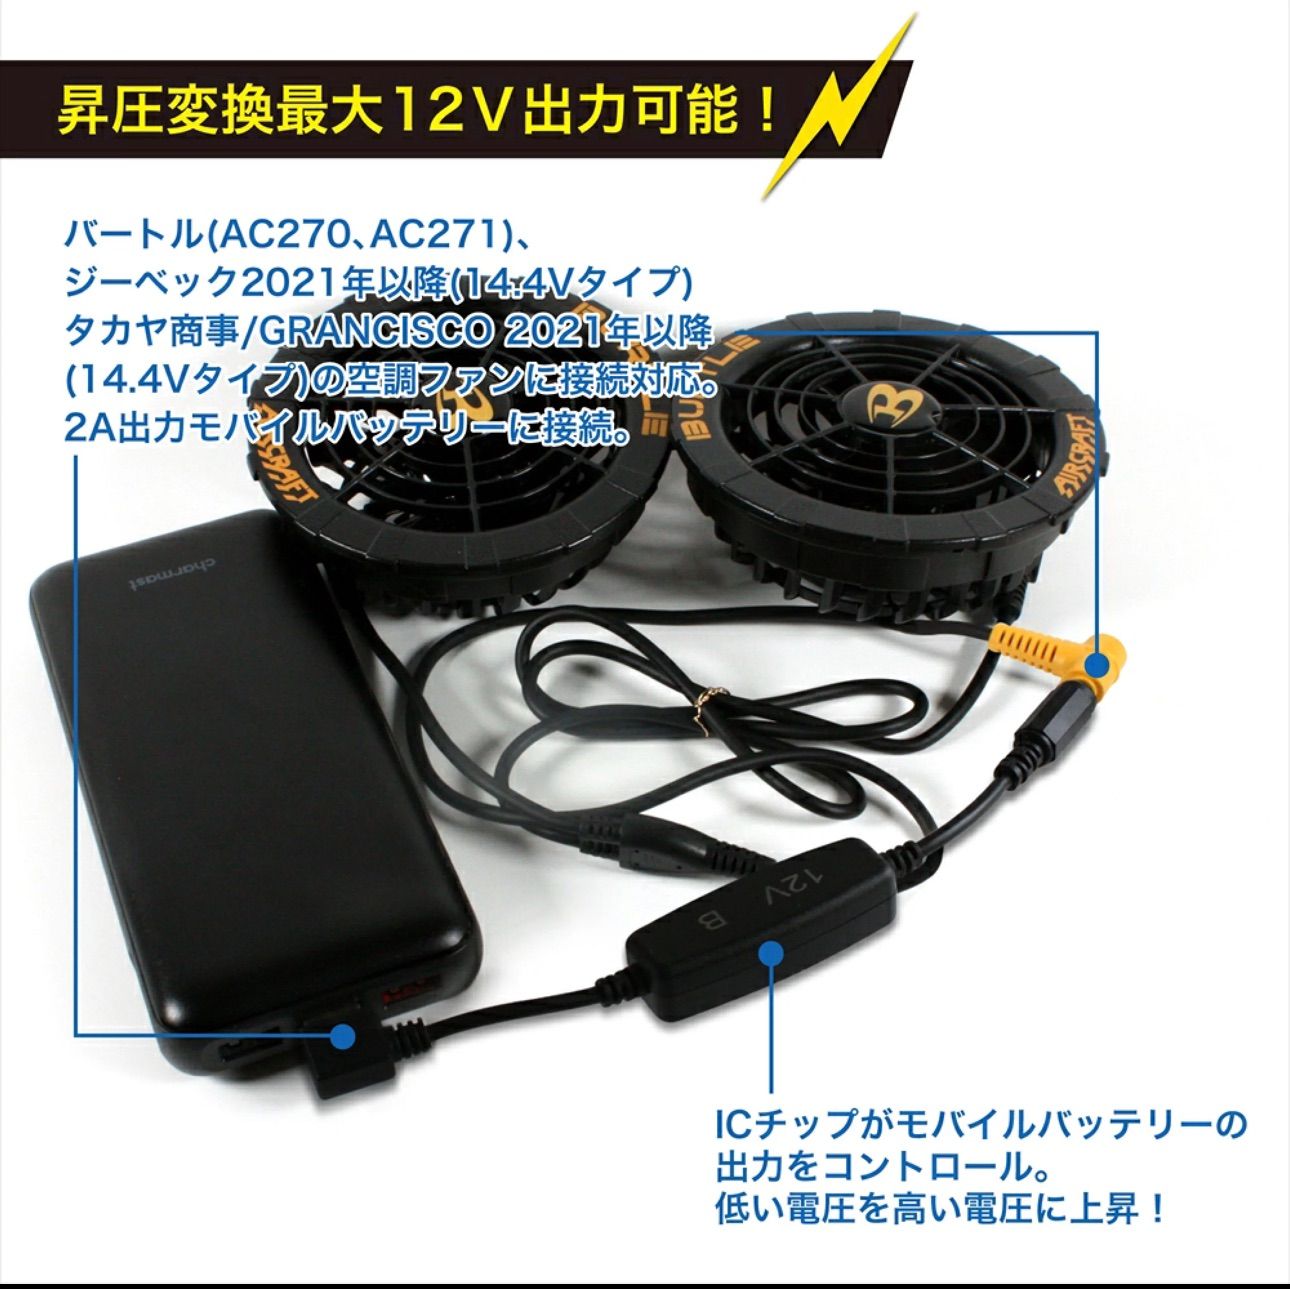 バートル 空調服 12V USB昇圧 アダプター L型 12V DC12V モバイル 